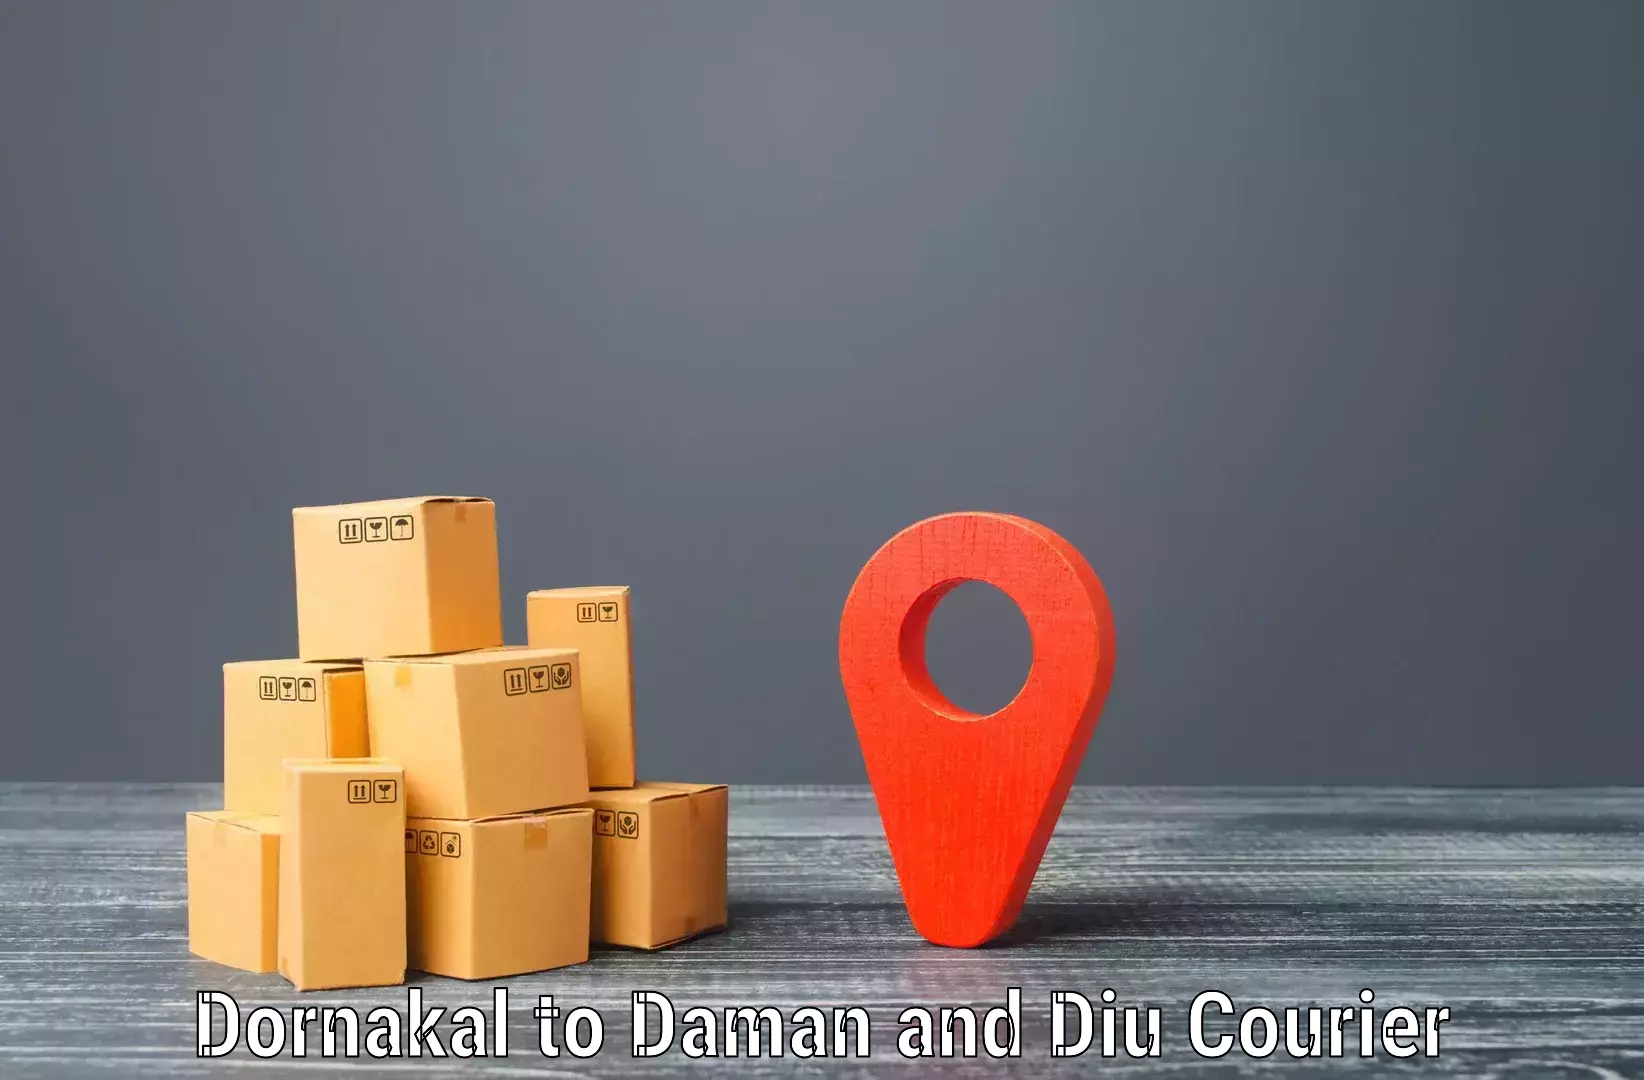 Courier app Dornakal to Diu